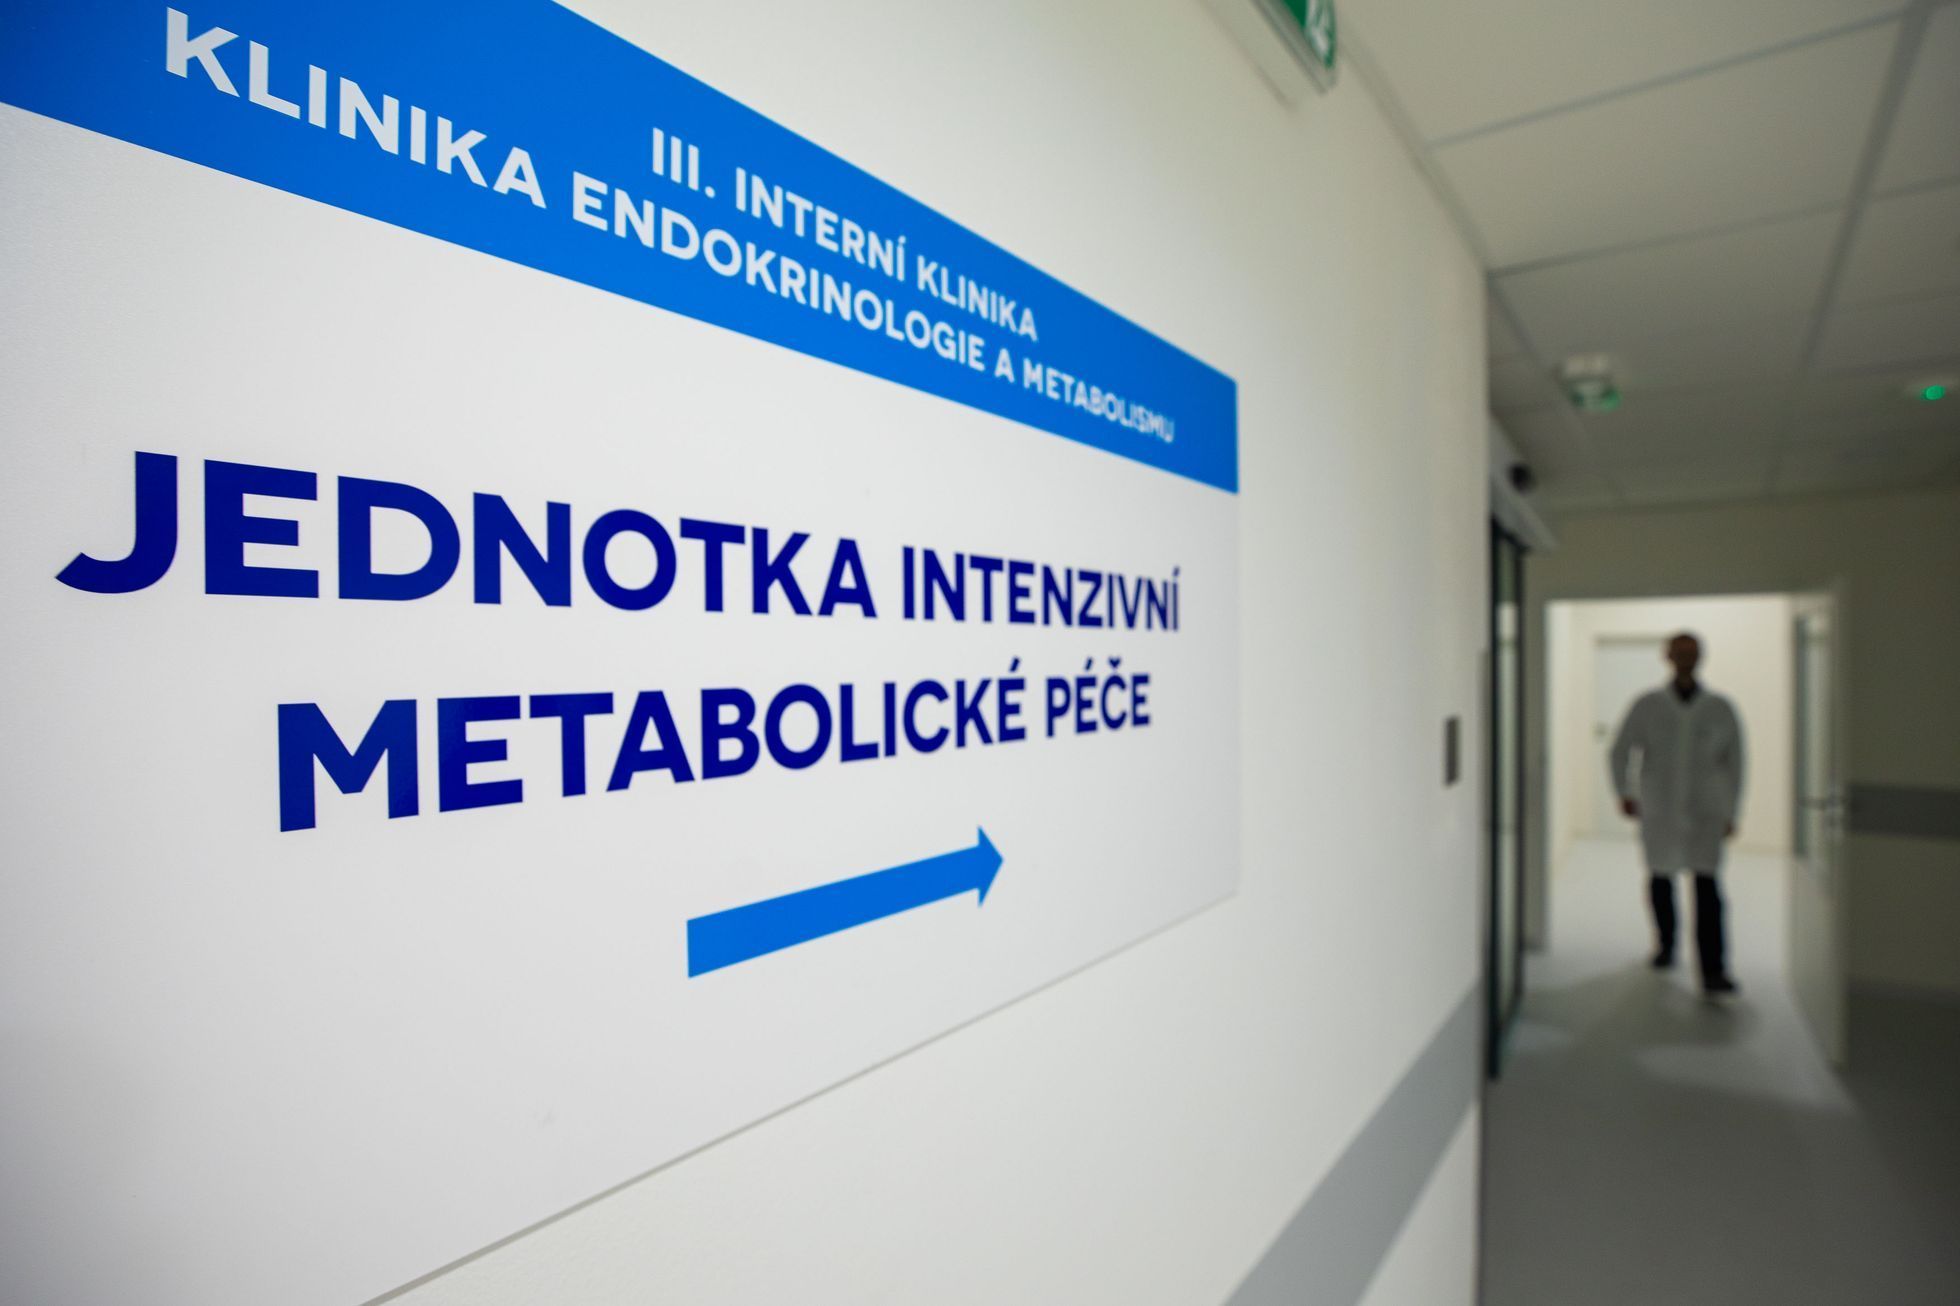 Otevření nové jednotky intenzivní metabolické péče pro pacienty s těžkou obezitou, interní klinika, Všeobecná fakultní nemocnice v Praze